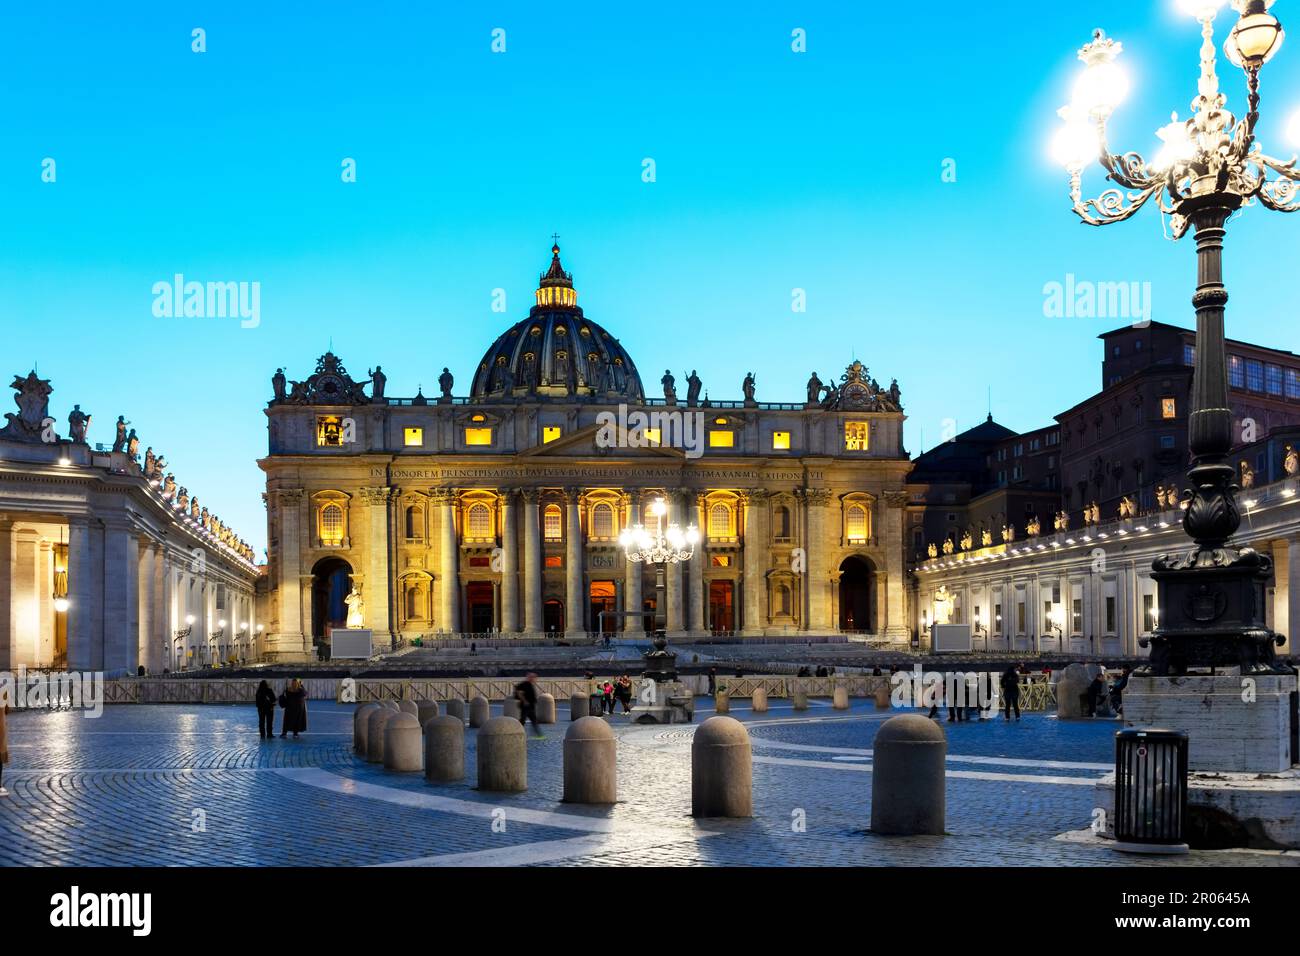 Persone di fronte a St. Basilica di Pietro alla luce della sera, Roma, Lazio, Italyhen vor dem Petersdom im Abendlicht, Rom, Lazio, Italien Foto Stock